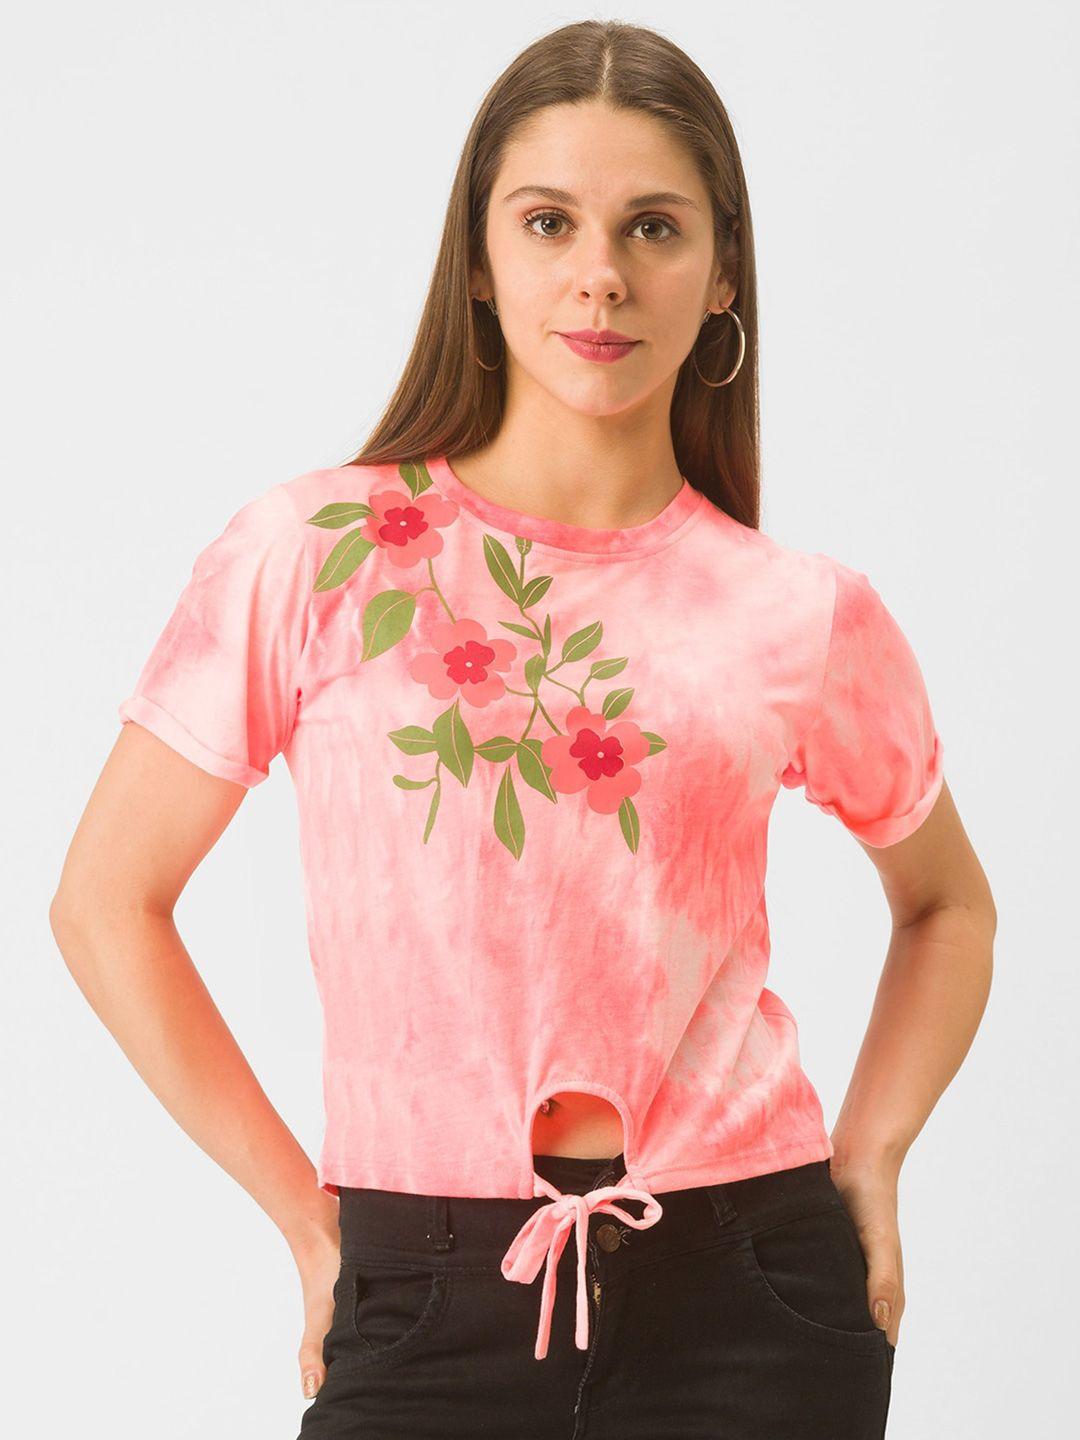 globus women pink dyed t-shirt